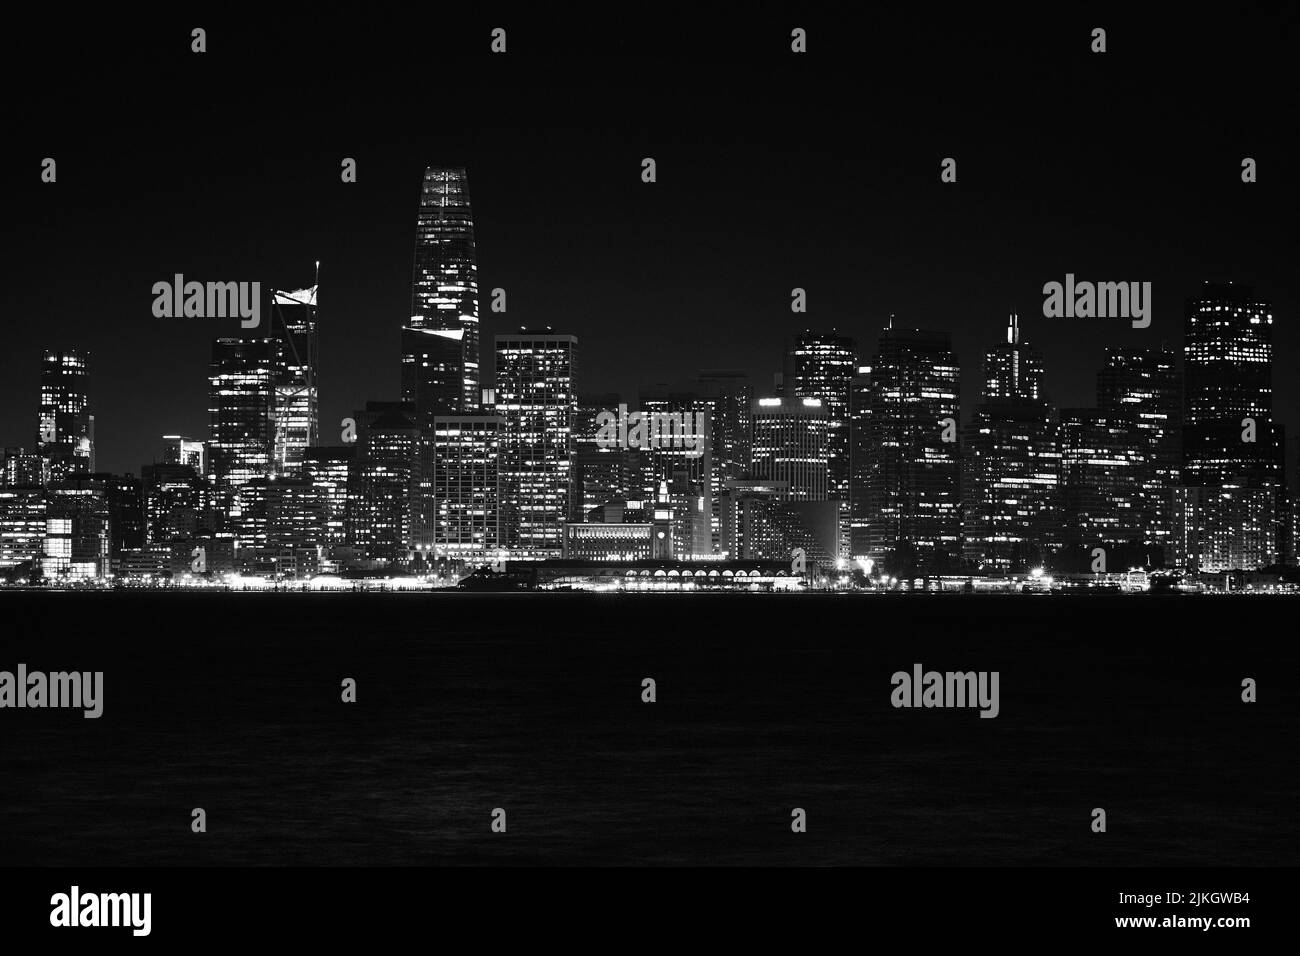 Una fotografía panorámica en escala de grises de los brillantes rascacielos de la ciudad de San Francisco, EE.UU Foto de stock